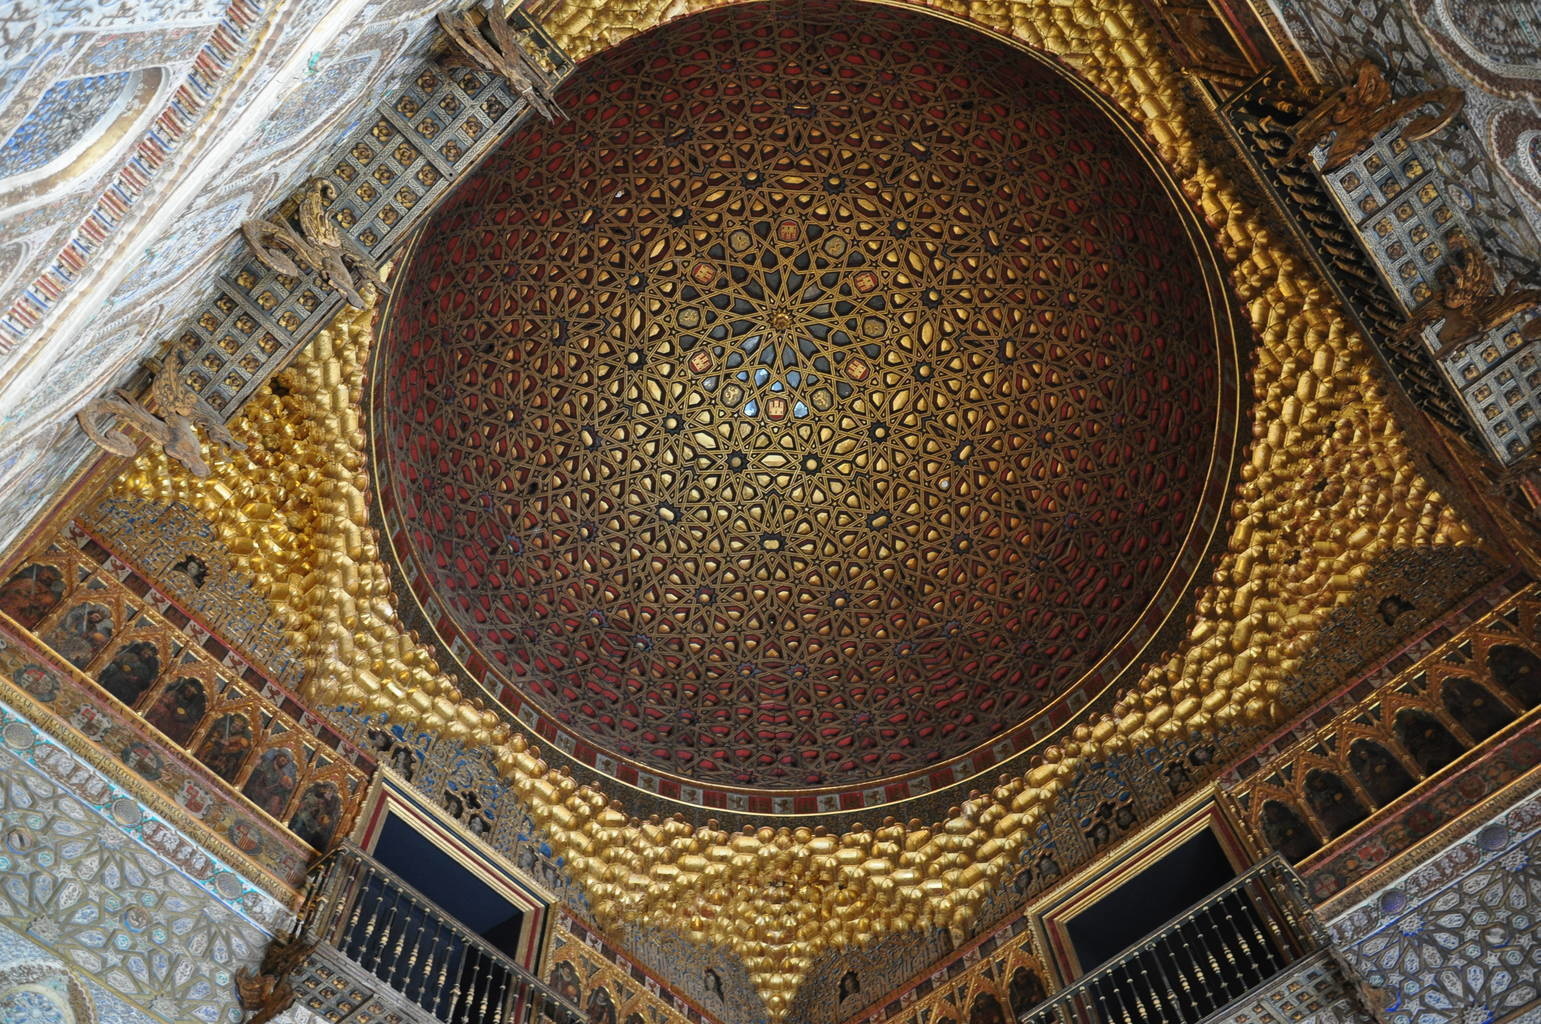 塞維亞王宮 (The Alcázar of Seville), 西班牙